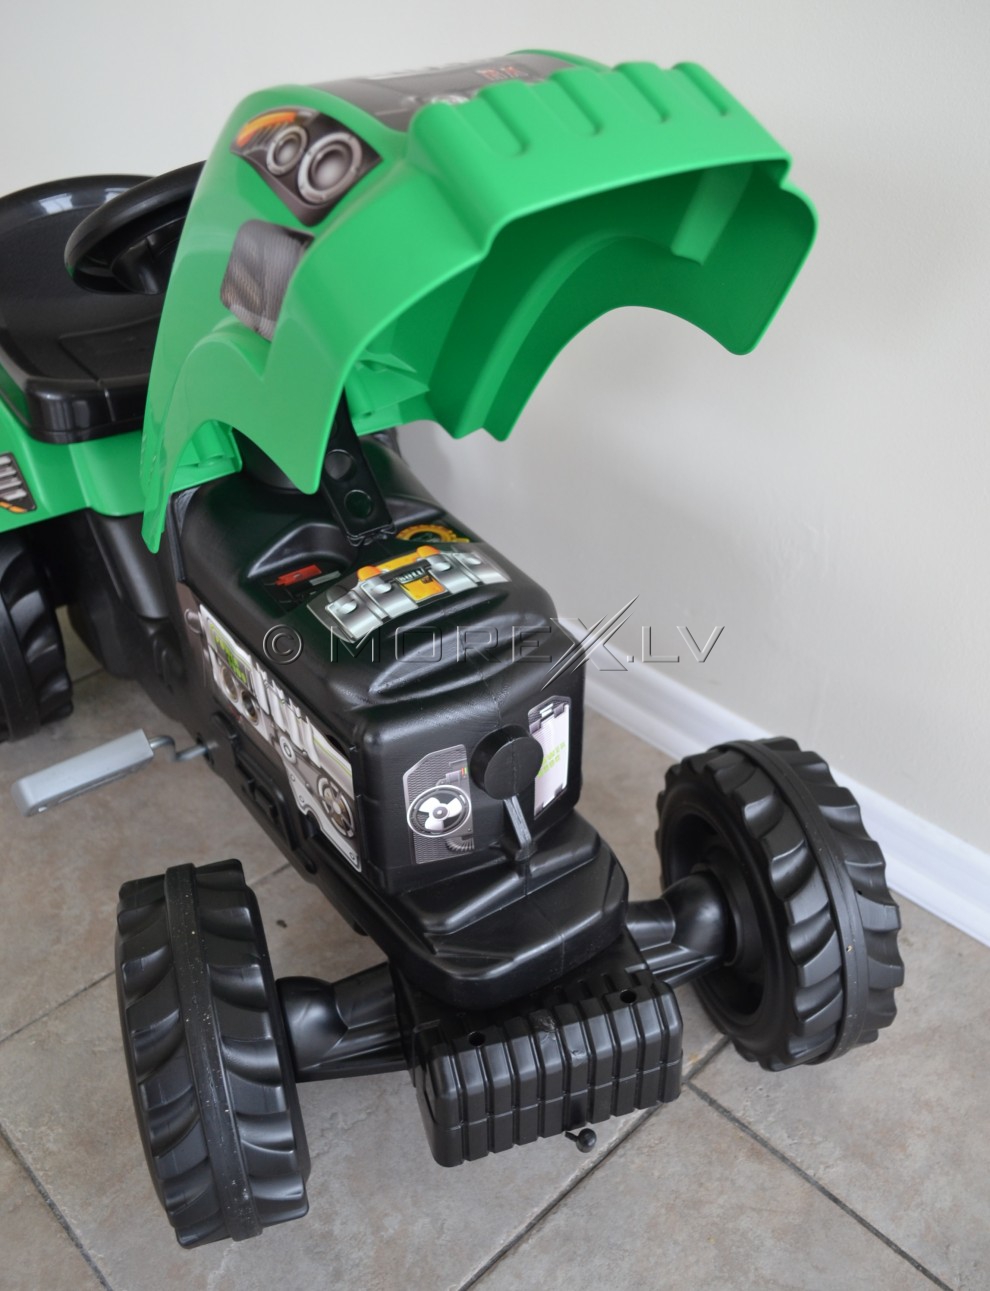 Bērnu traktors ar piekabi - Smoby Green (rotaļlieta)